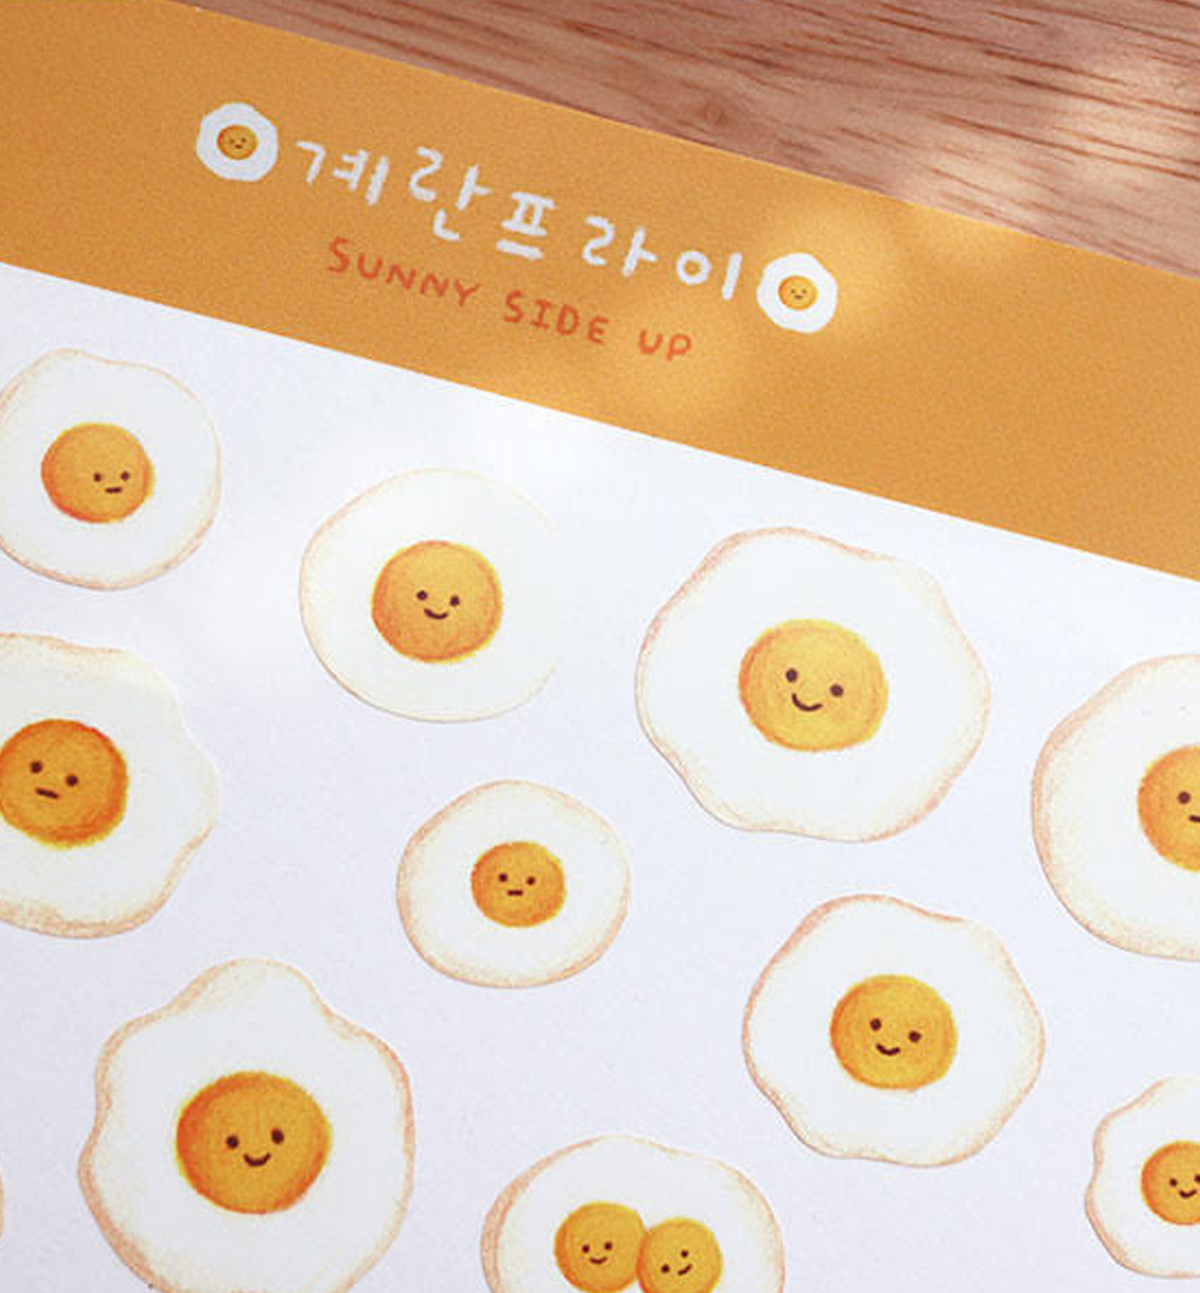 Fried Egg Sticker